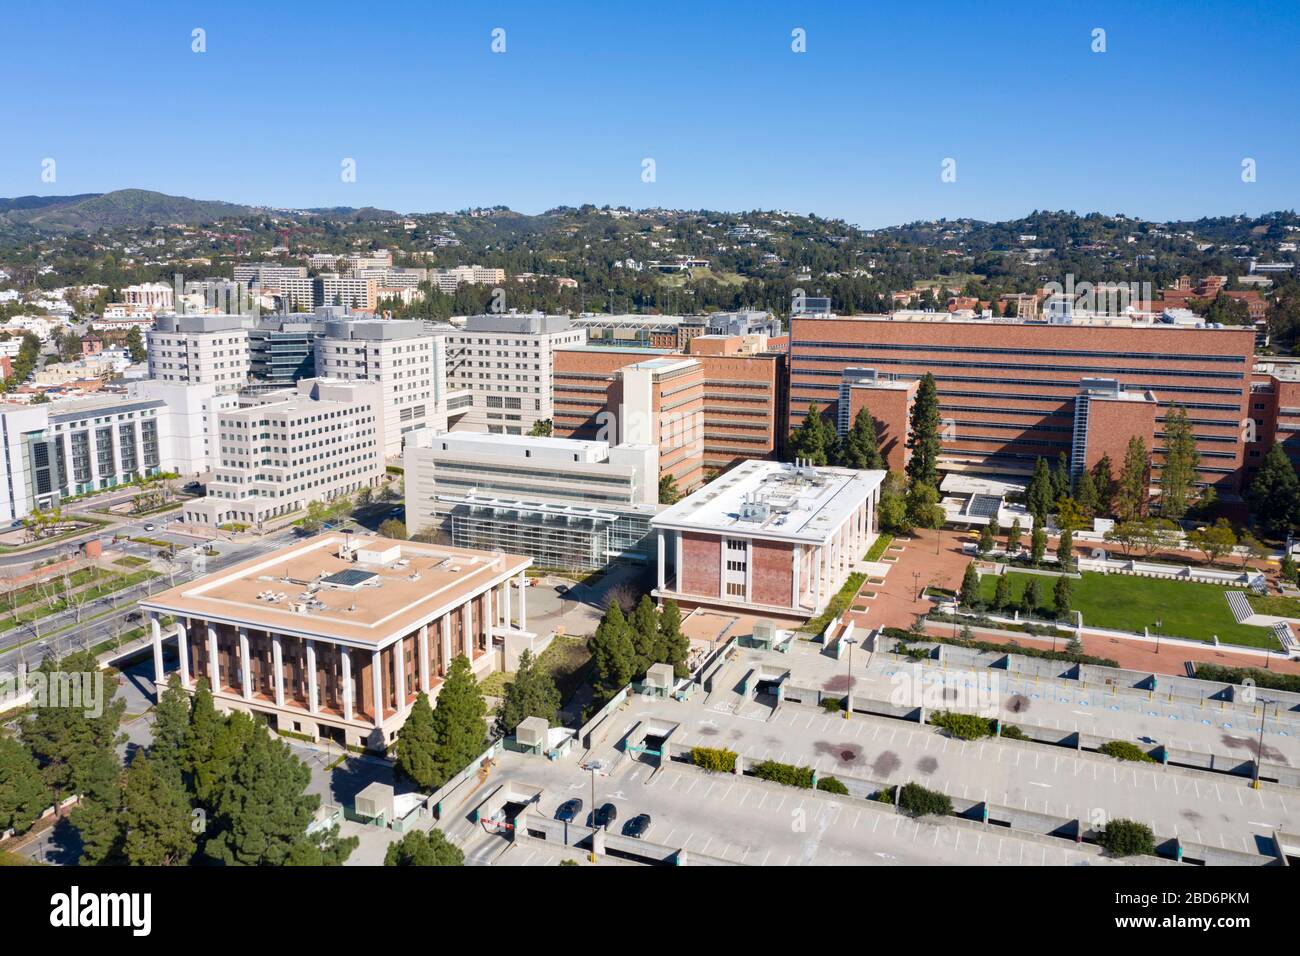 Vista aerea dell'UCLA Medical Center presso il campus di Westwood, Los Angeles Foto Stock